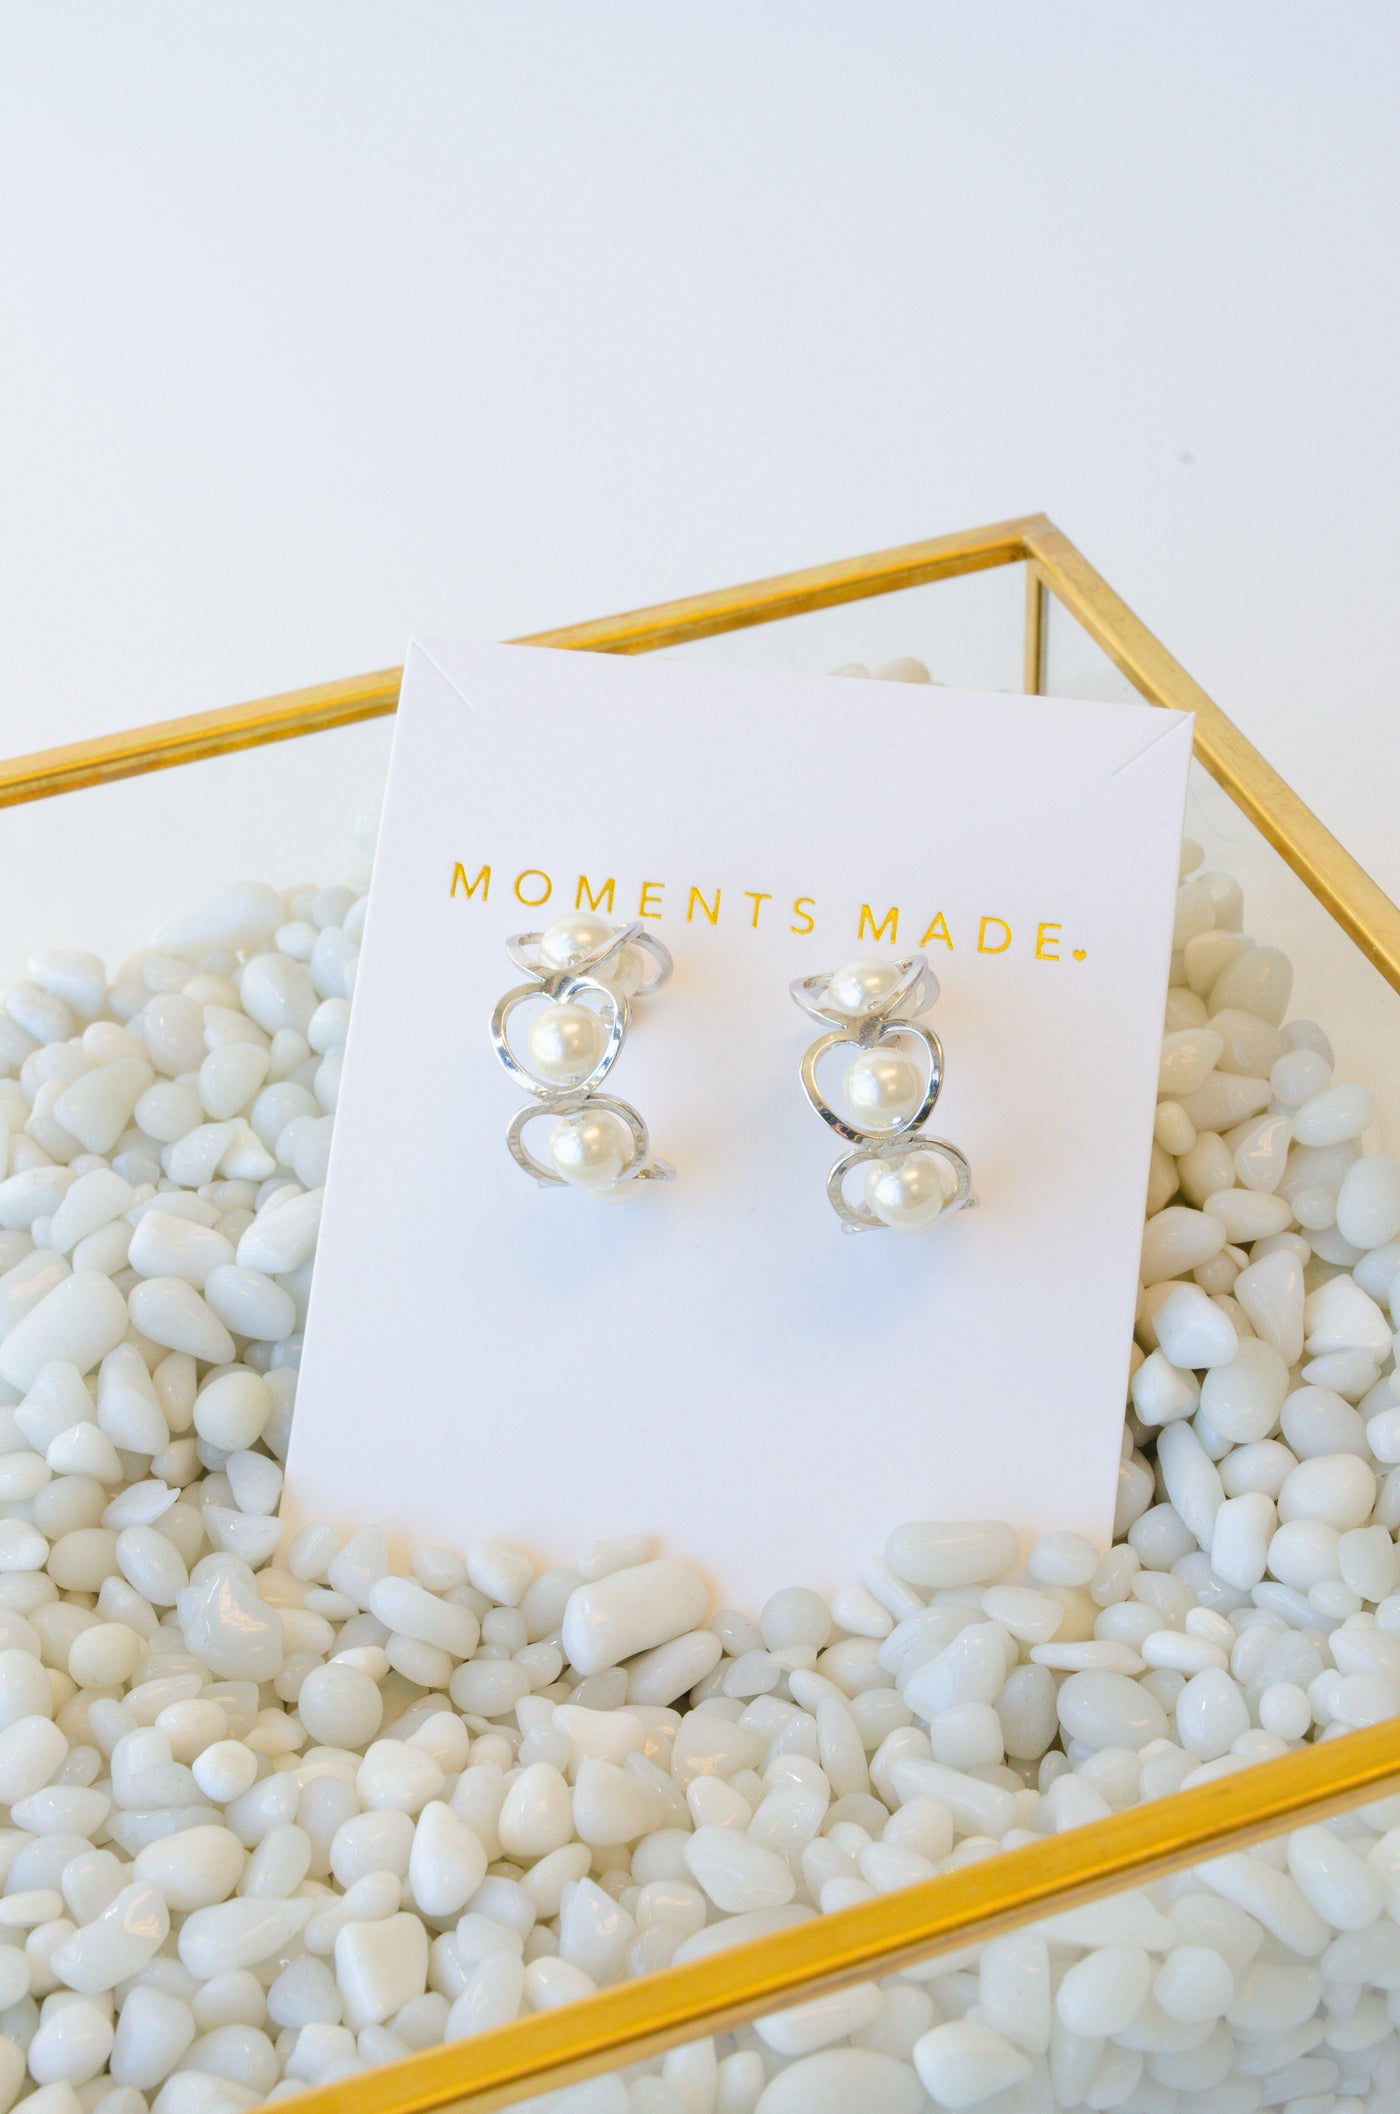 Silver hooped earrings with pearls from bridal shop in salt lake city utah